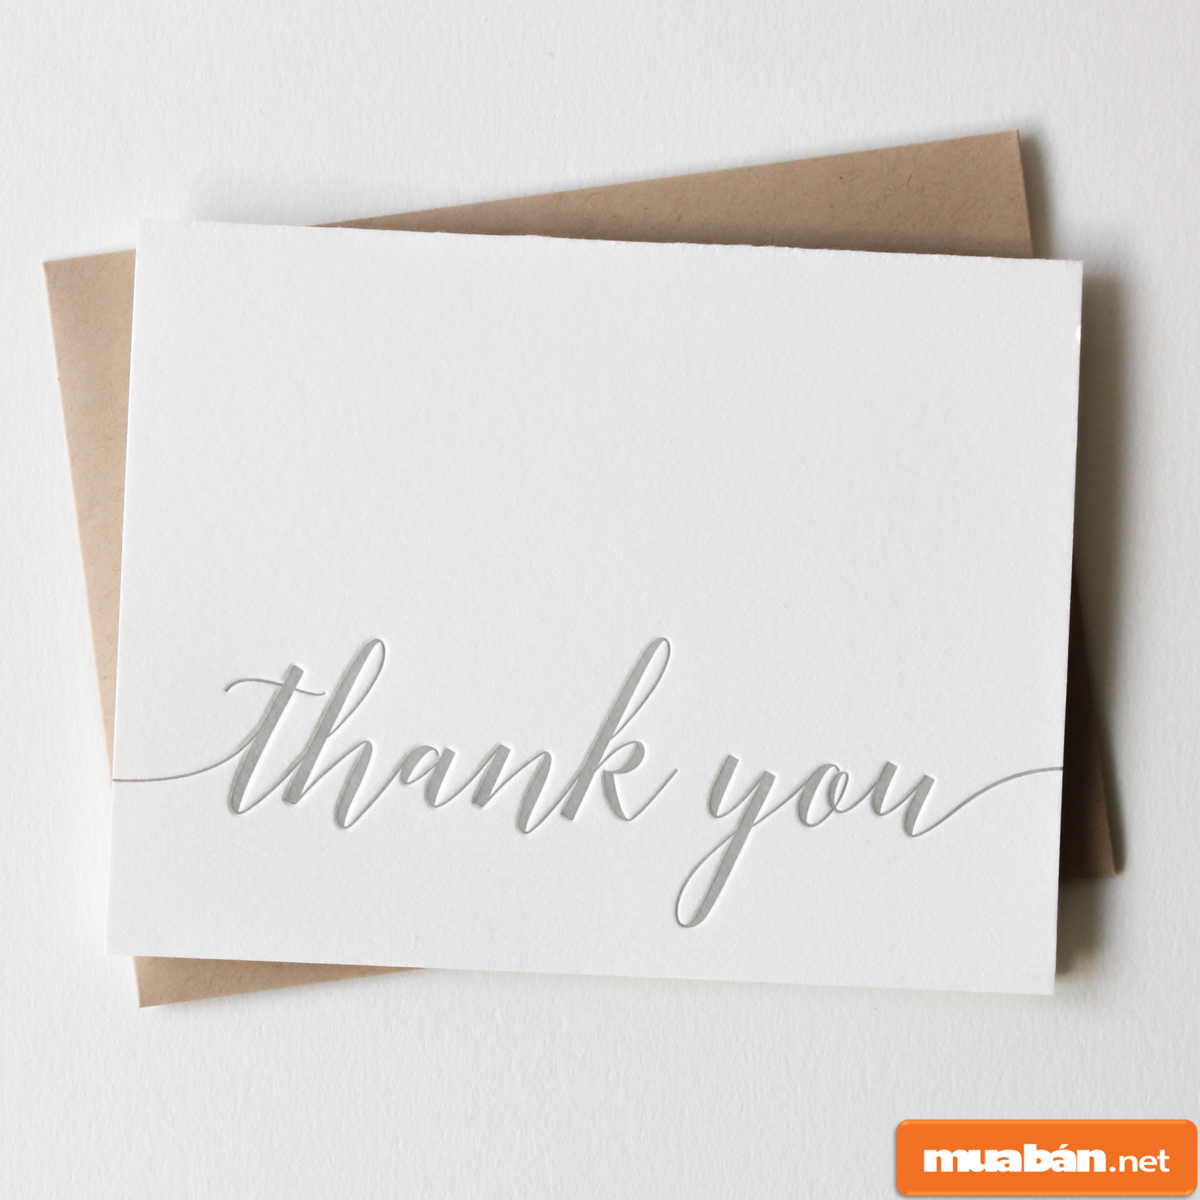 Thư cảm ơn khách hàng: Nơi giúp bạn bày tỏ lòng cảm ơn